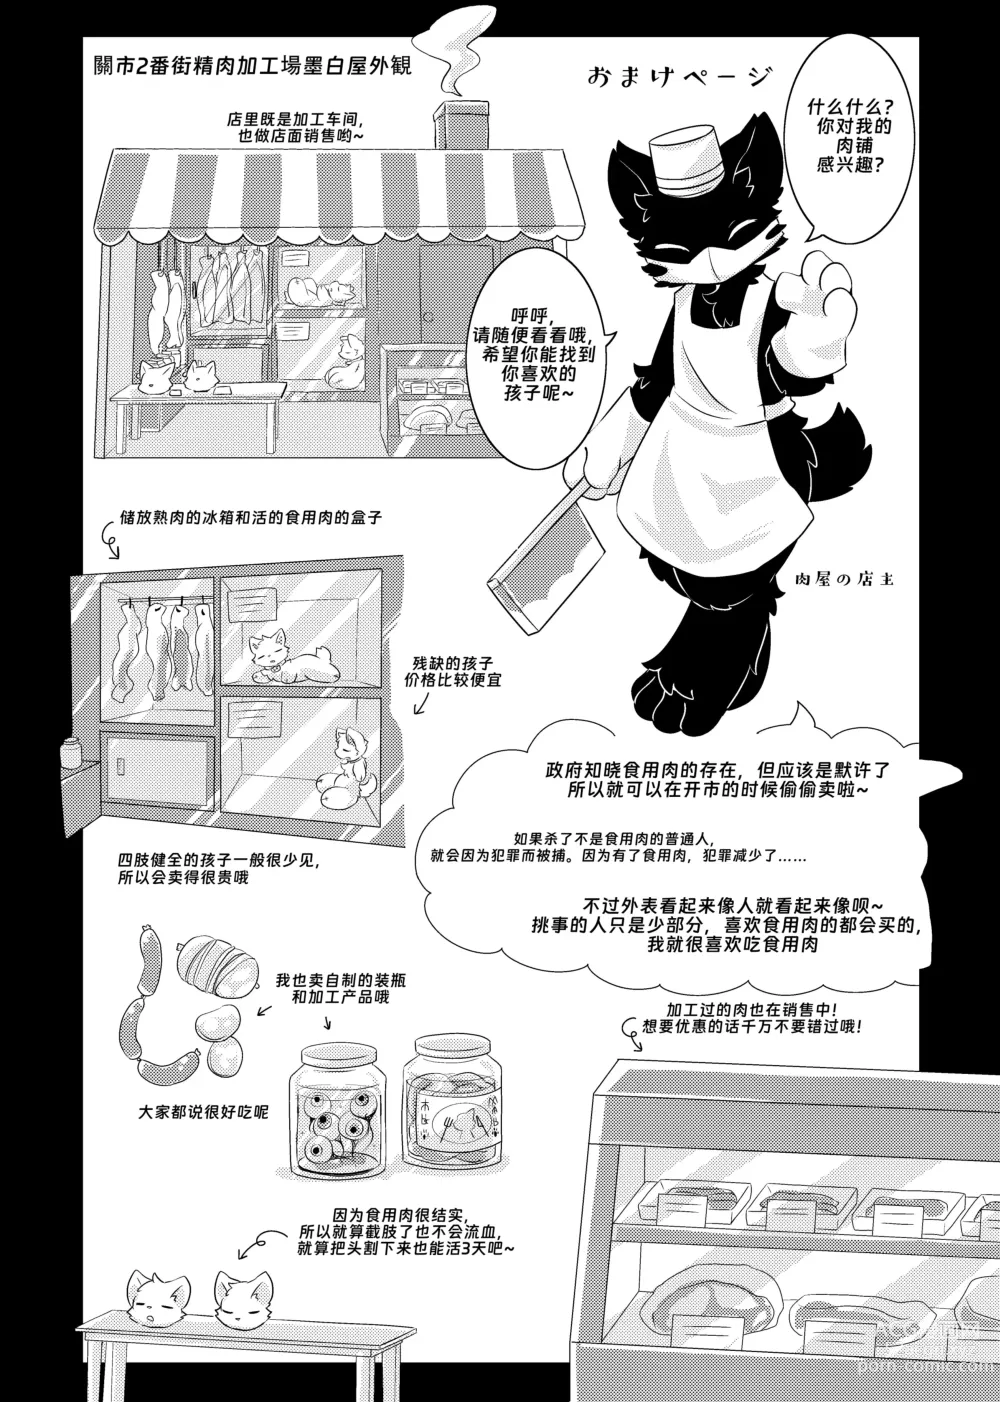 Page 3 of doujinshi Bokuyo motsuni no oishii seikatu.R-18G